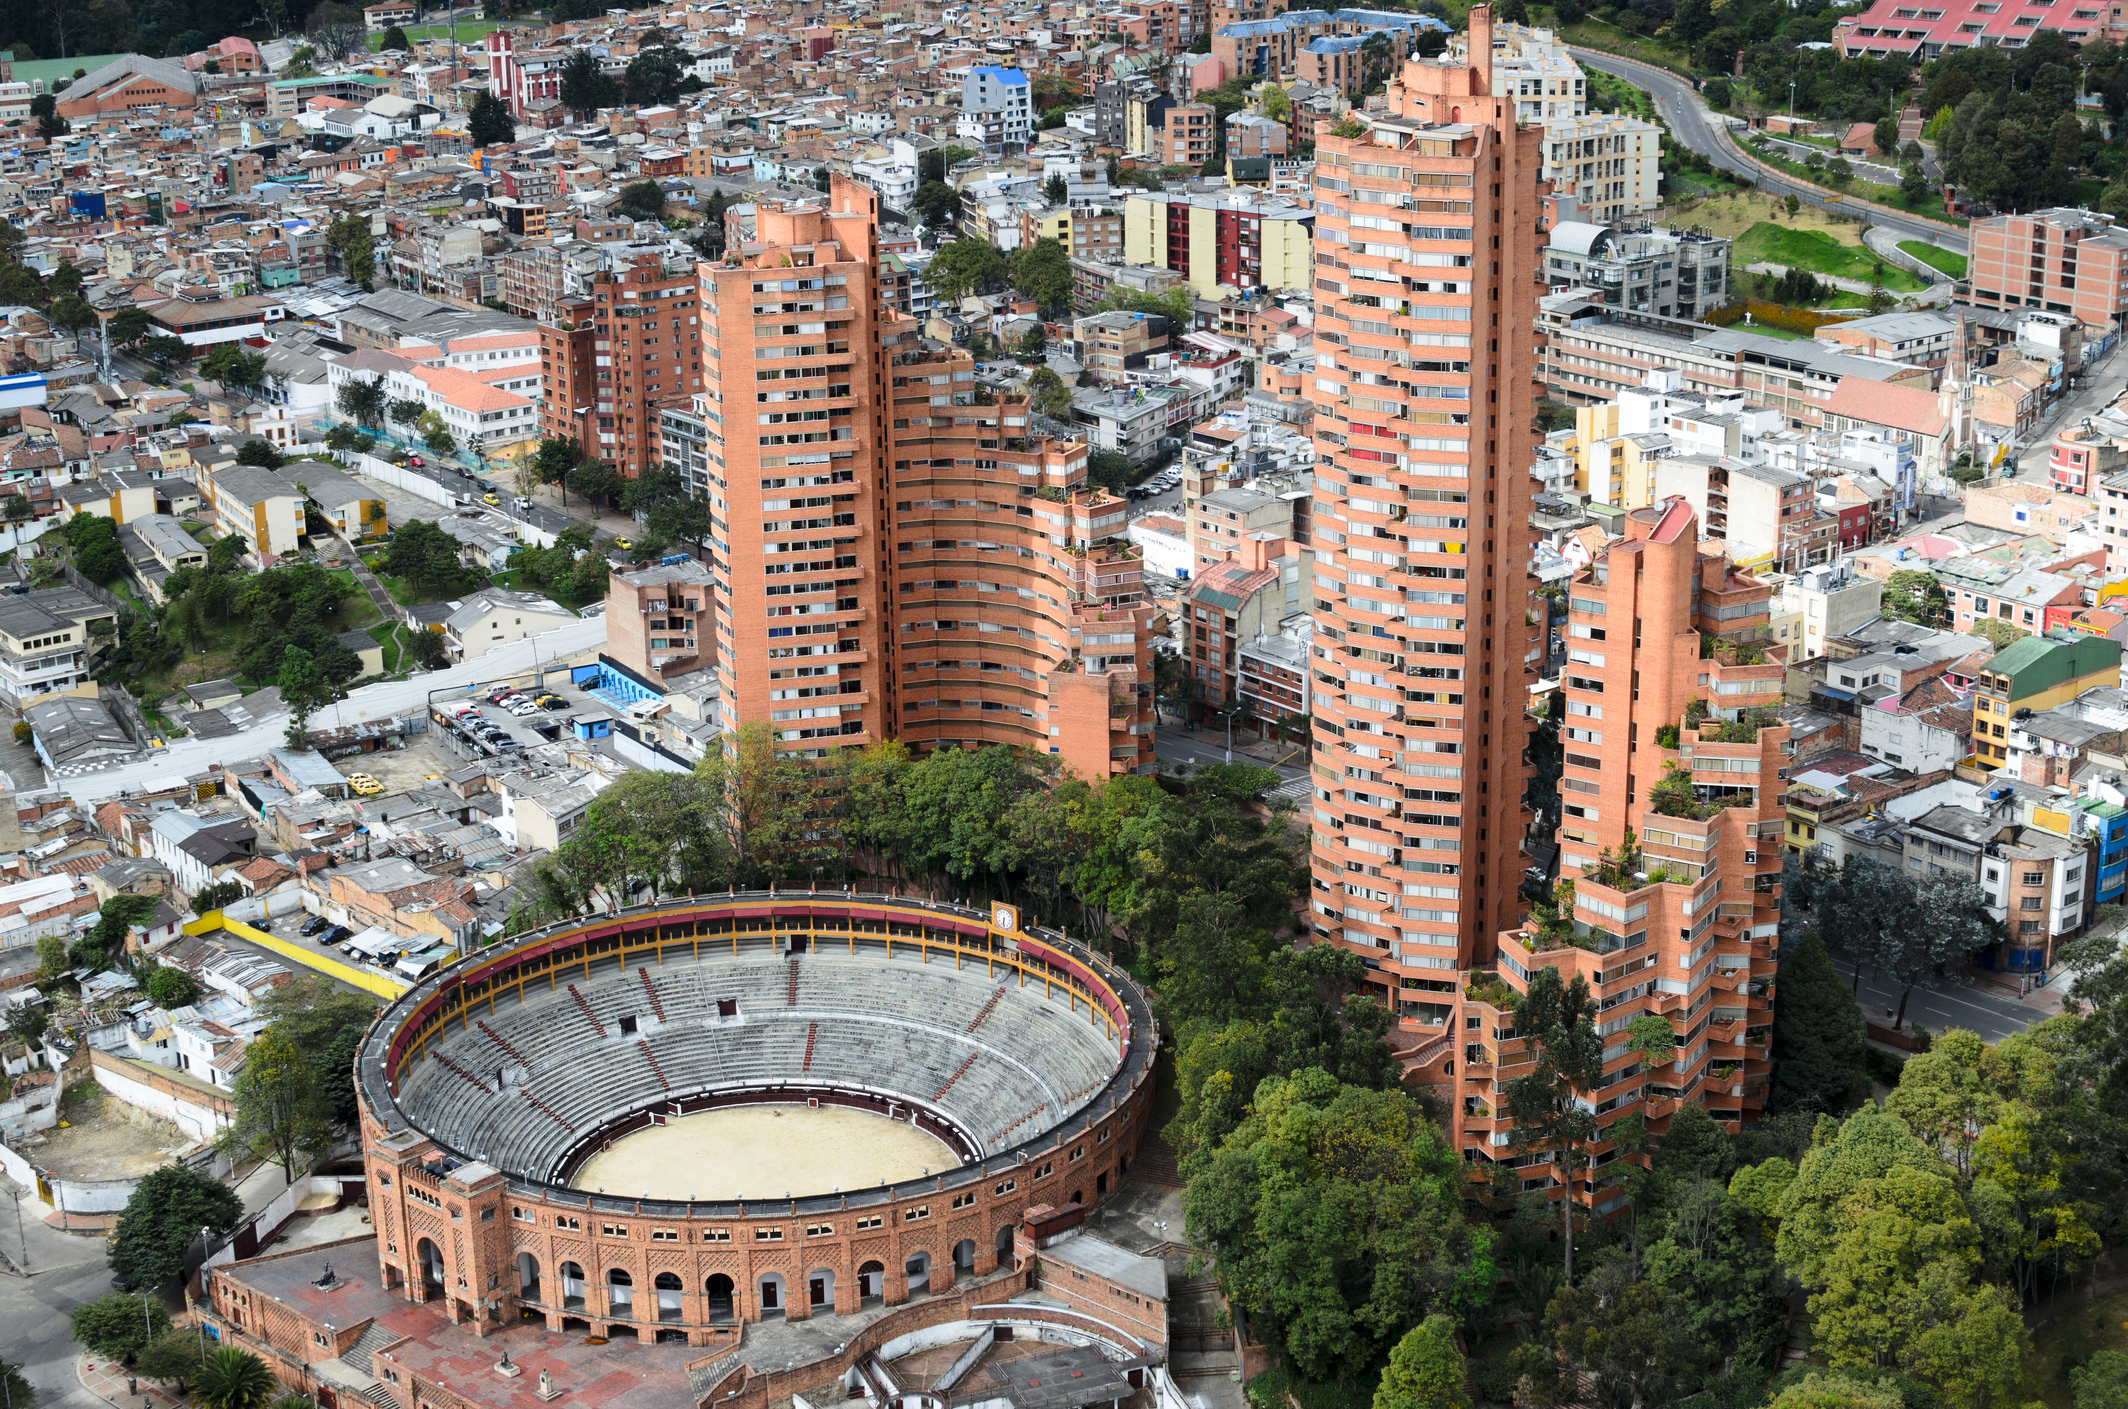 Столицата на Колумбия Богота е красив и екзотичен град, непрекъснато разкъсван от множество граждански войни и кръвопролития. В резултат на неспиращите с години войни, близо една трета от населението живее под прага на бедността. За търсещите вълнуващи преживявания туристи, Богота има какво да предложи. Сред задължителните за посещения места със сигурност са хълмът Монсерат, площадът "Боливар", Националният музей, Златният музей и др.